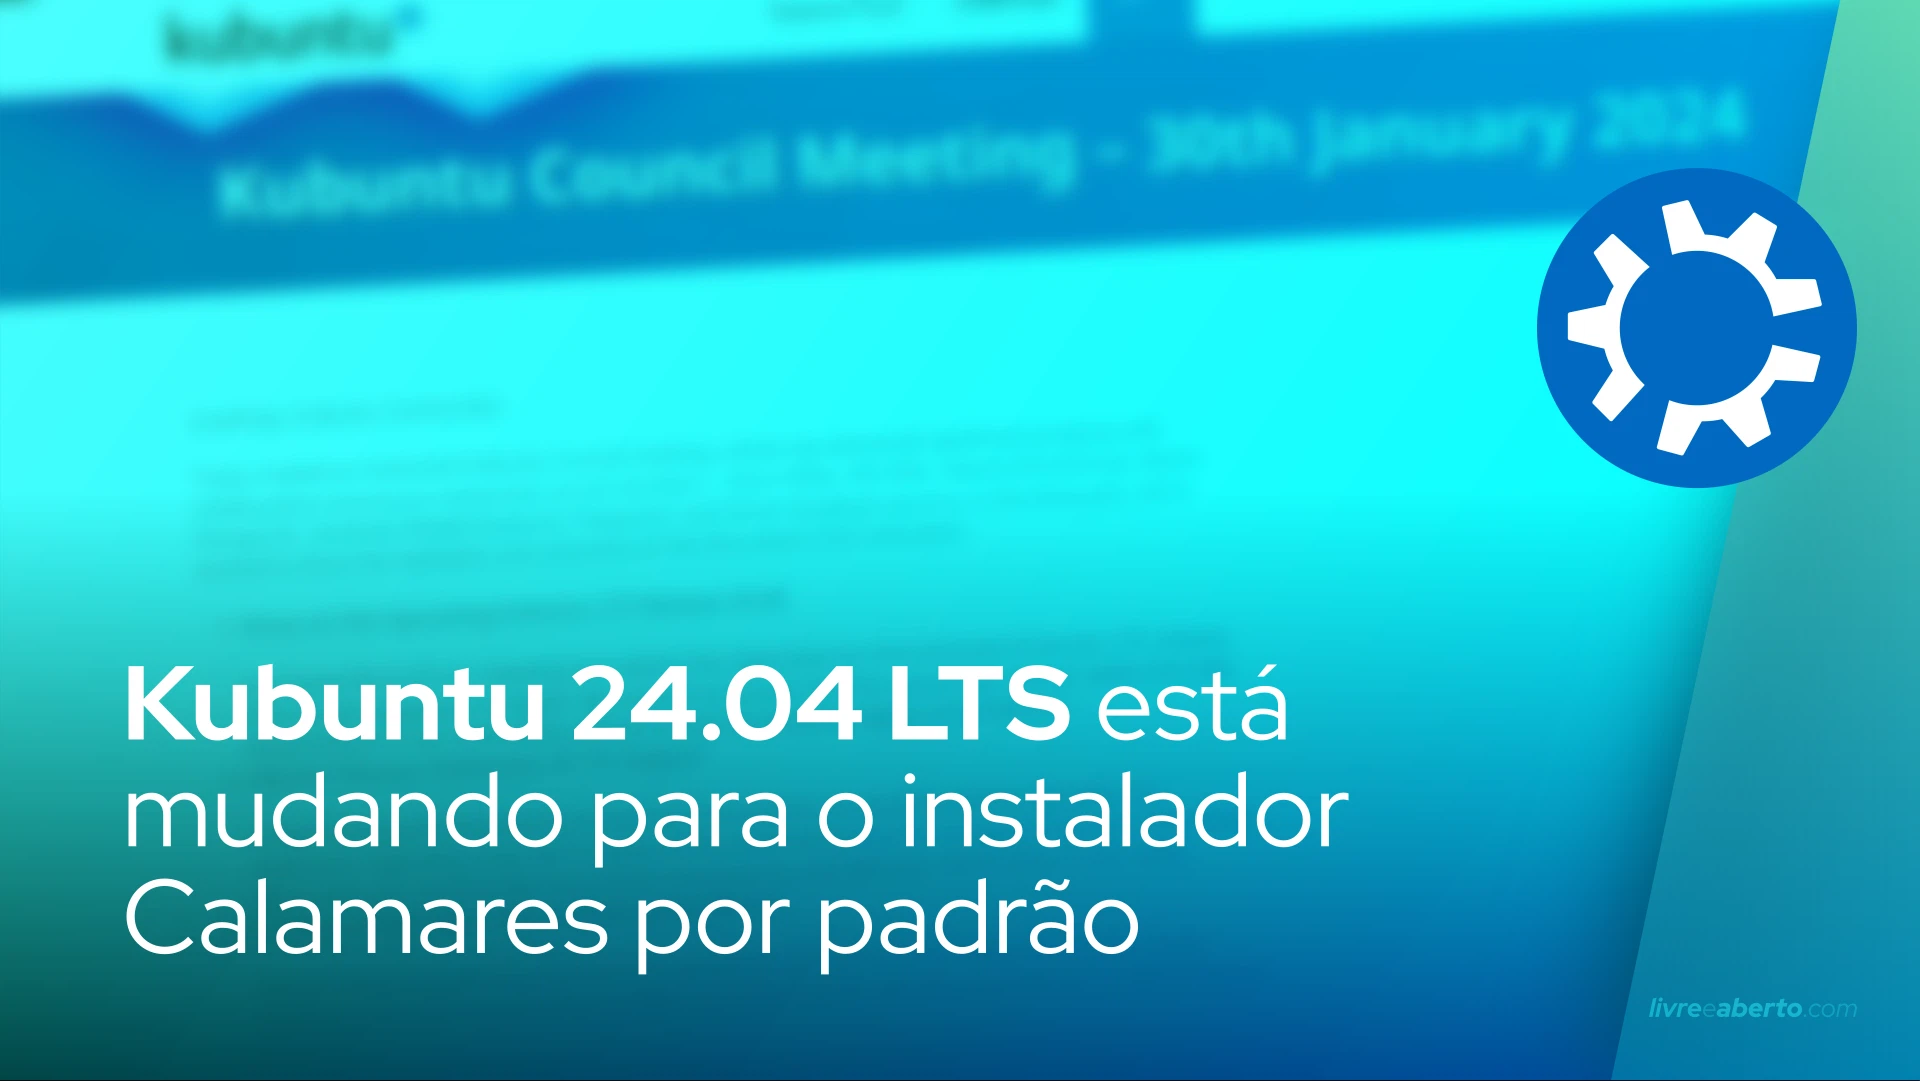 Kubuntu 24.04 LTS está mudando para o instalador Calamares por padrão